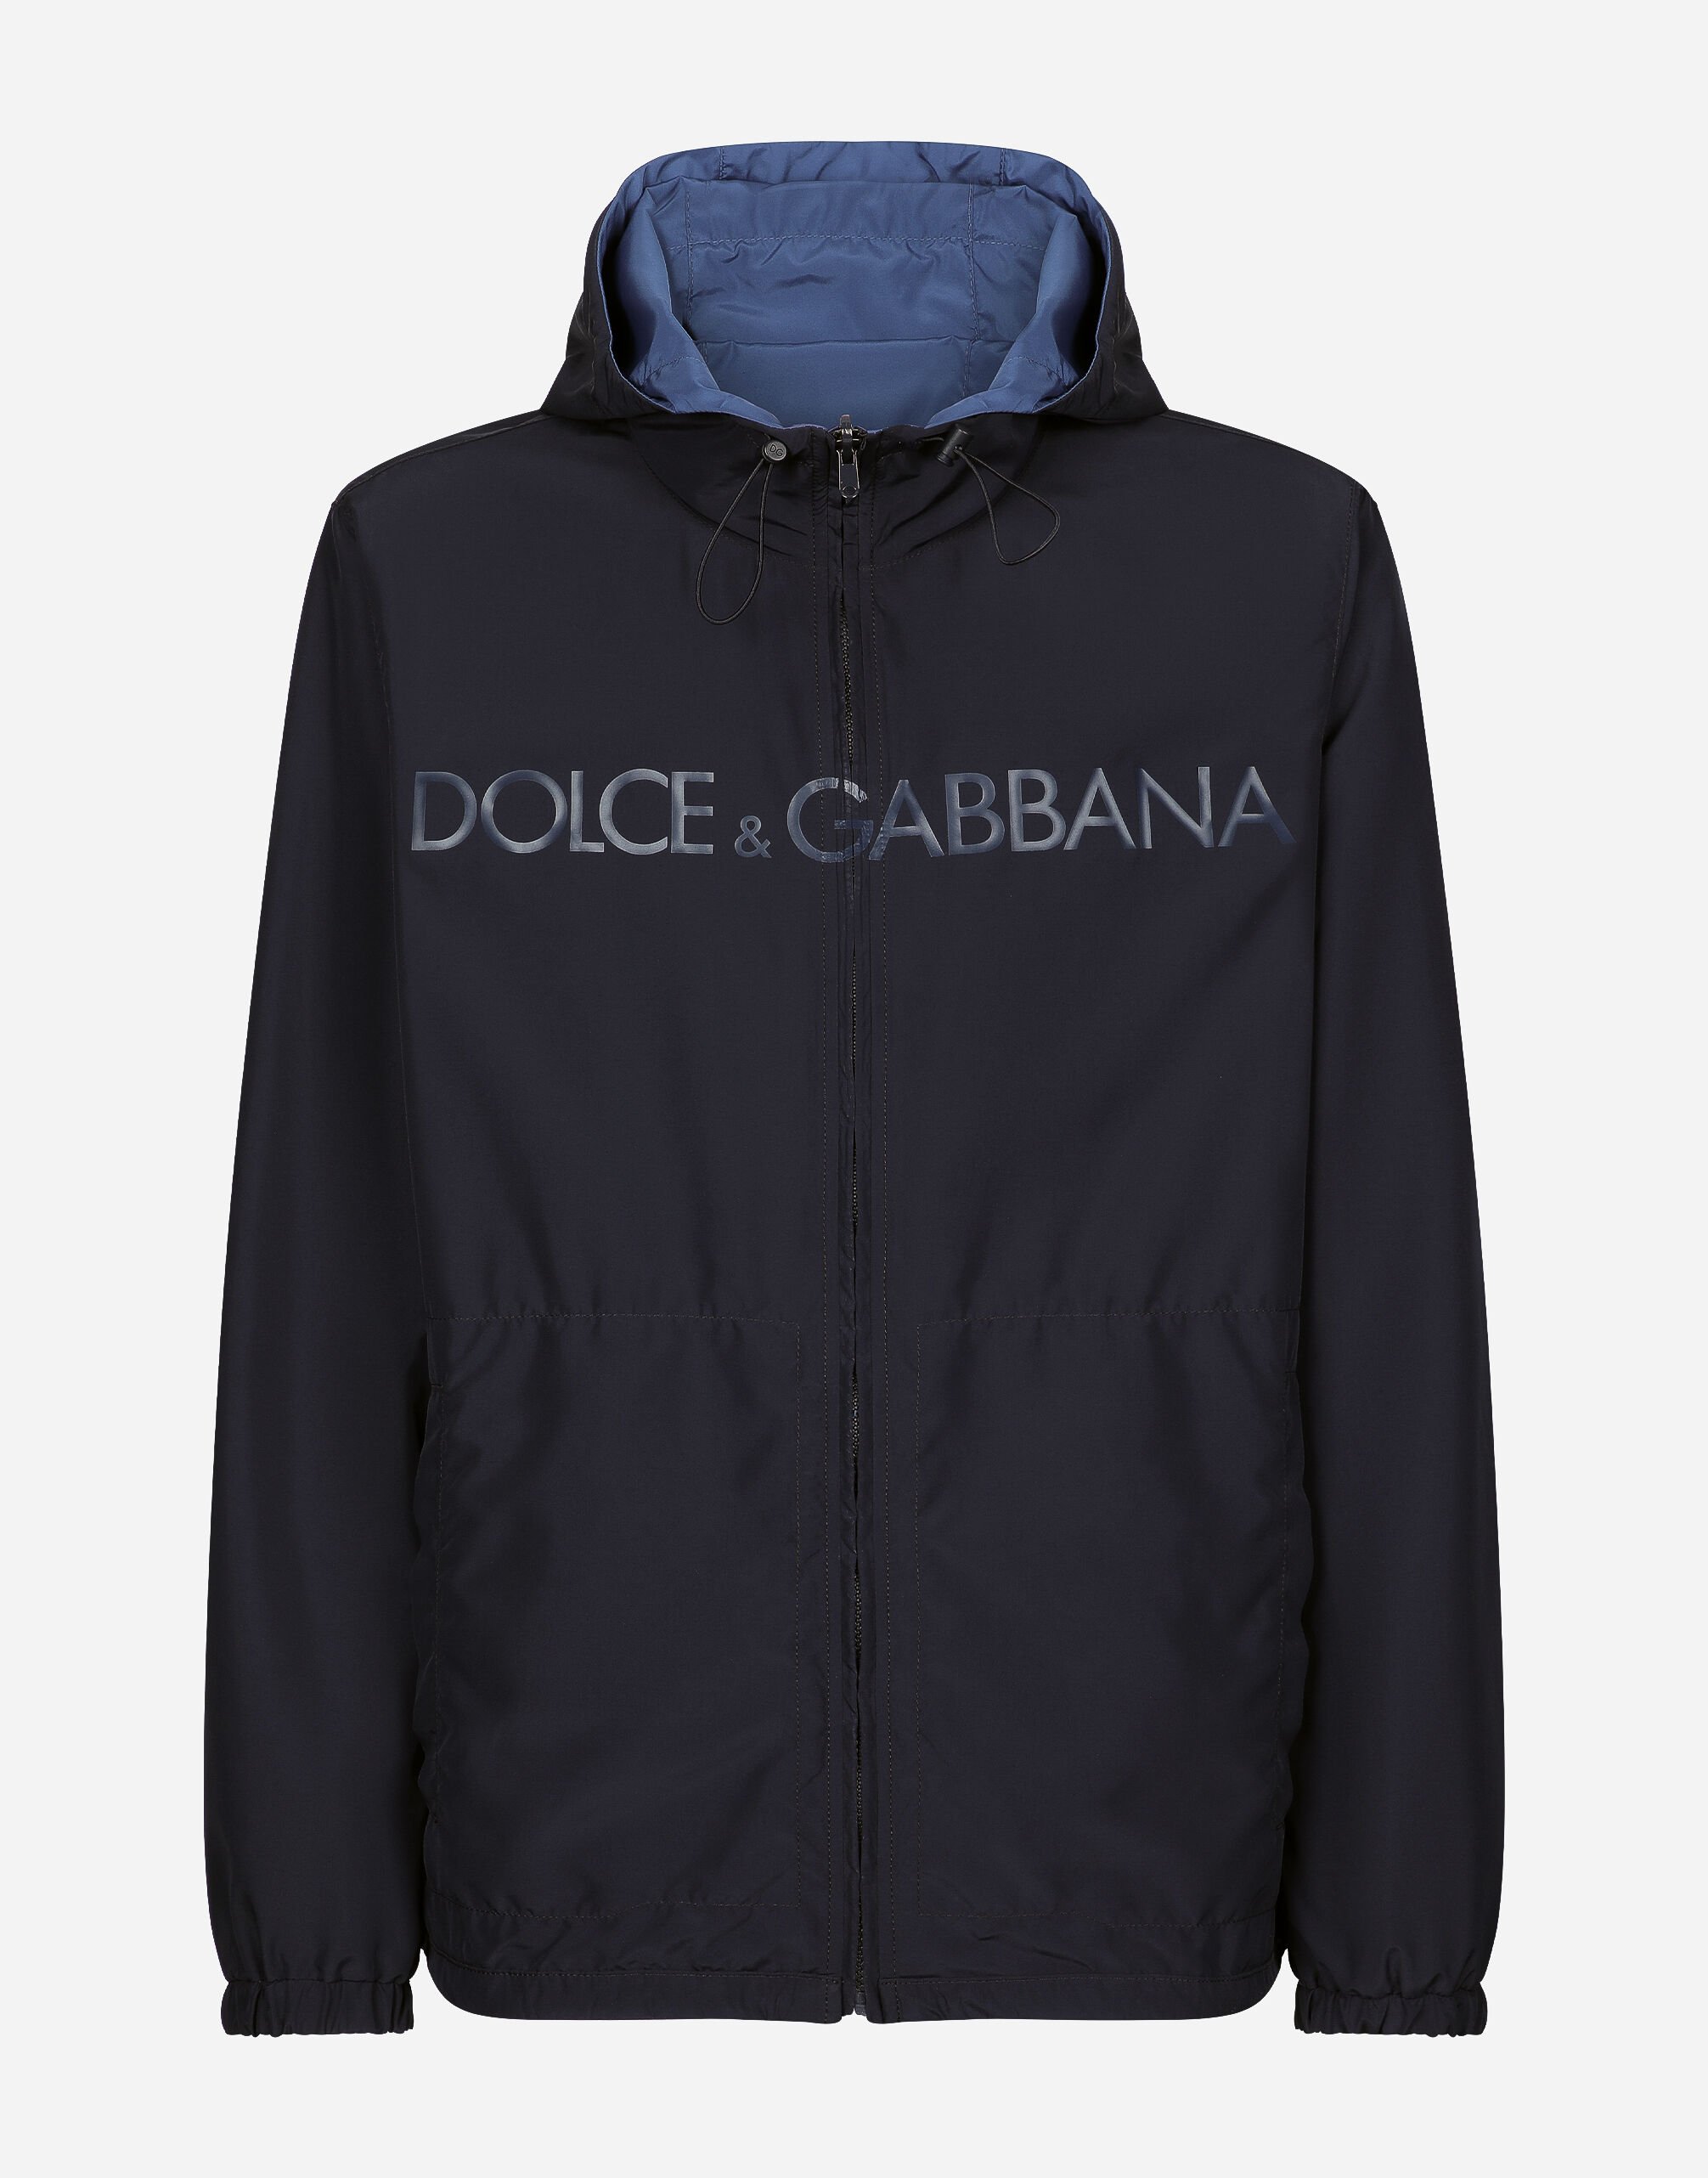 Dolce & Gabbana リバーシブルジャケット フード ロゴ ブルー G9AXYTGH666